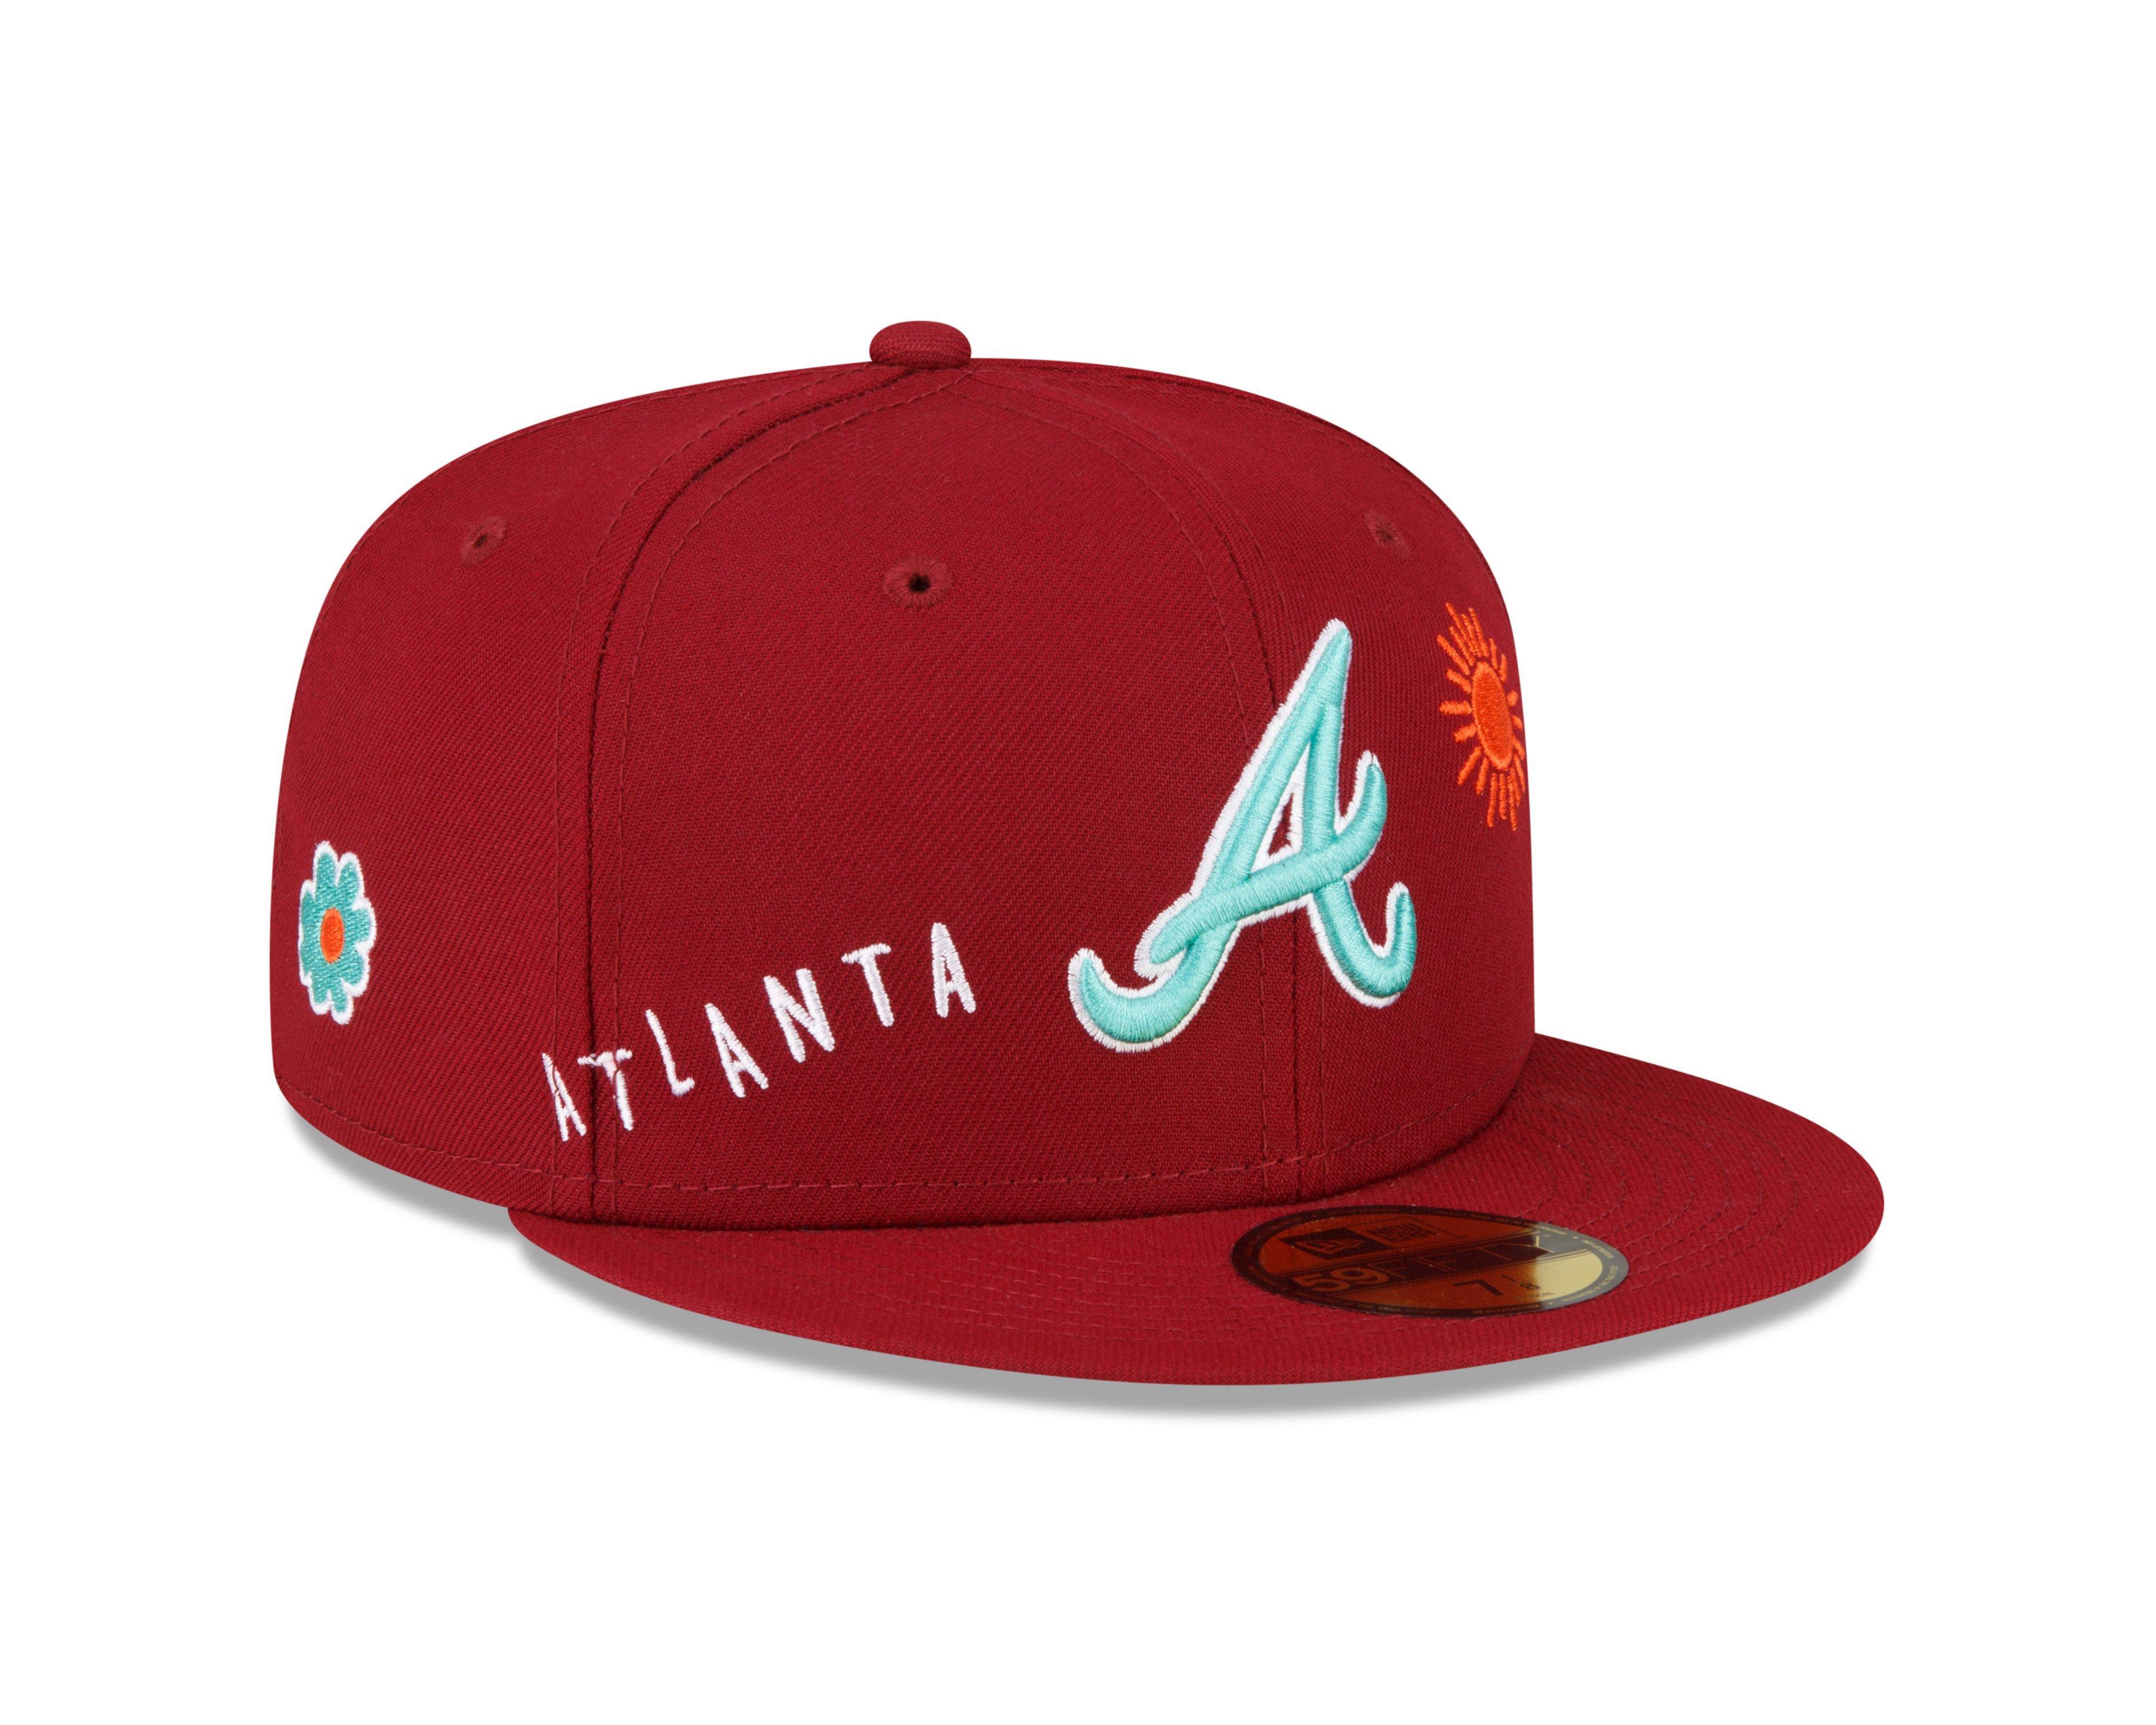 New Era Atlanta Braves Sandart Pack 59FIFTY Fitted Hat - Hibbett